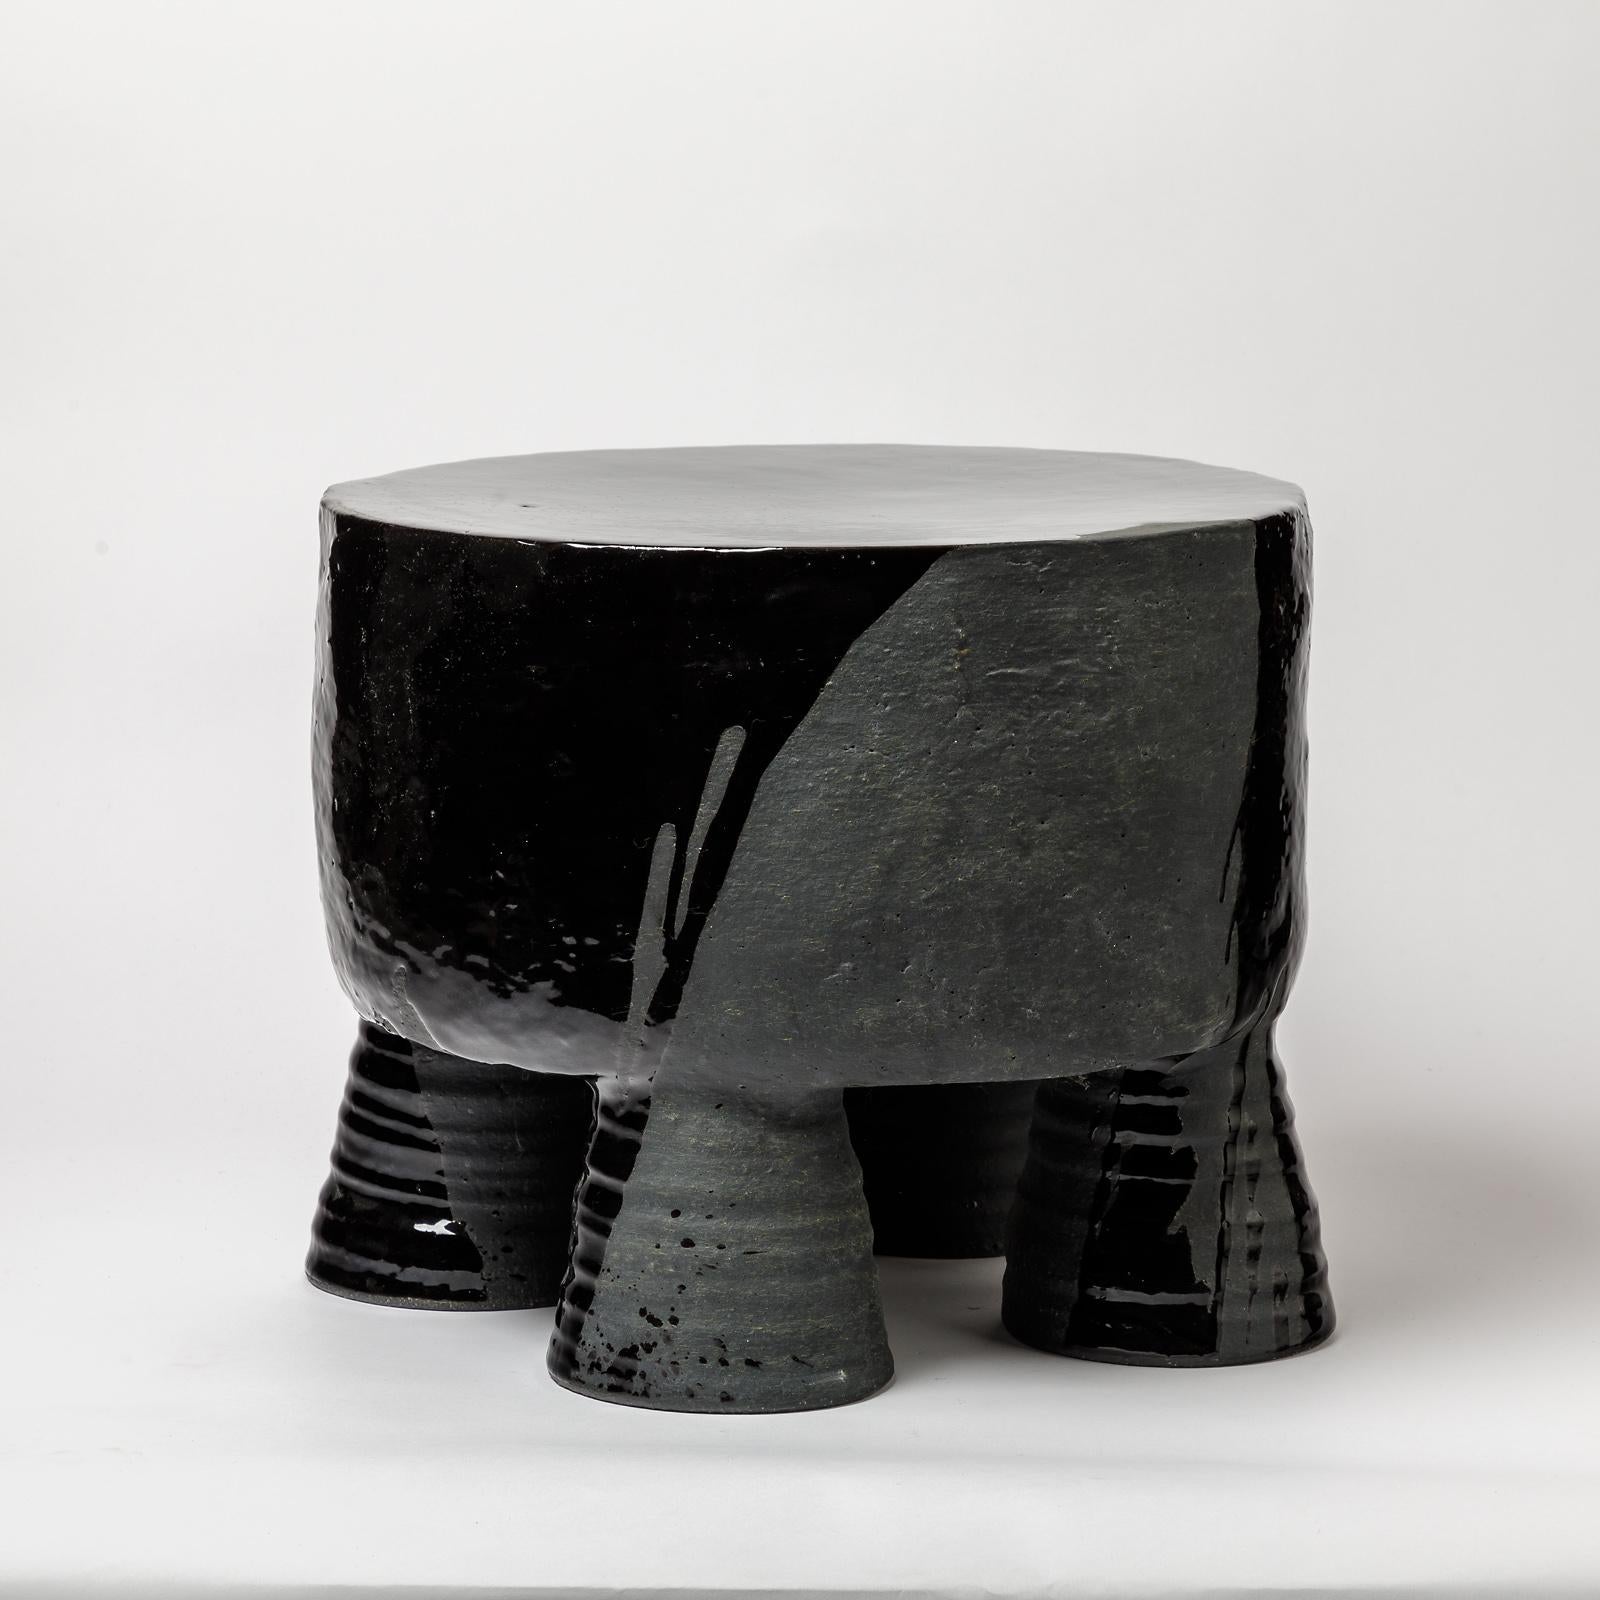 French Ceramic Stool with Black Glazes Decoration by Mia Jensen, circa 2021